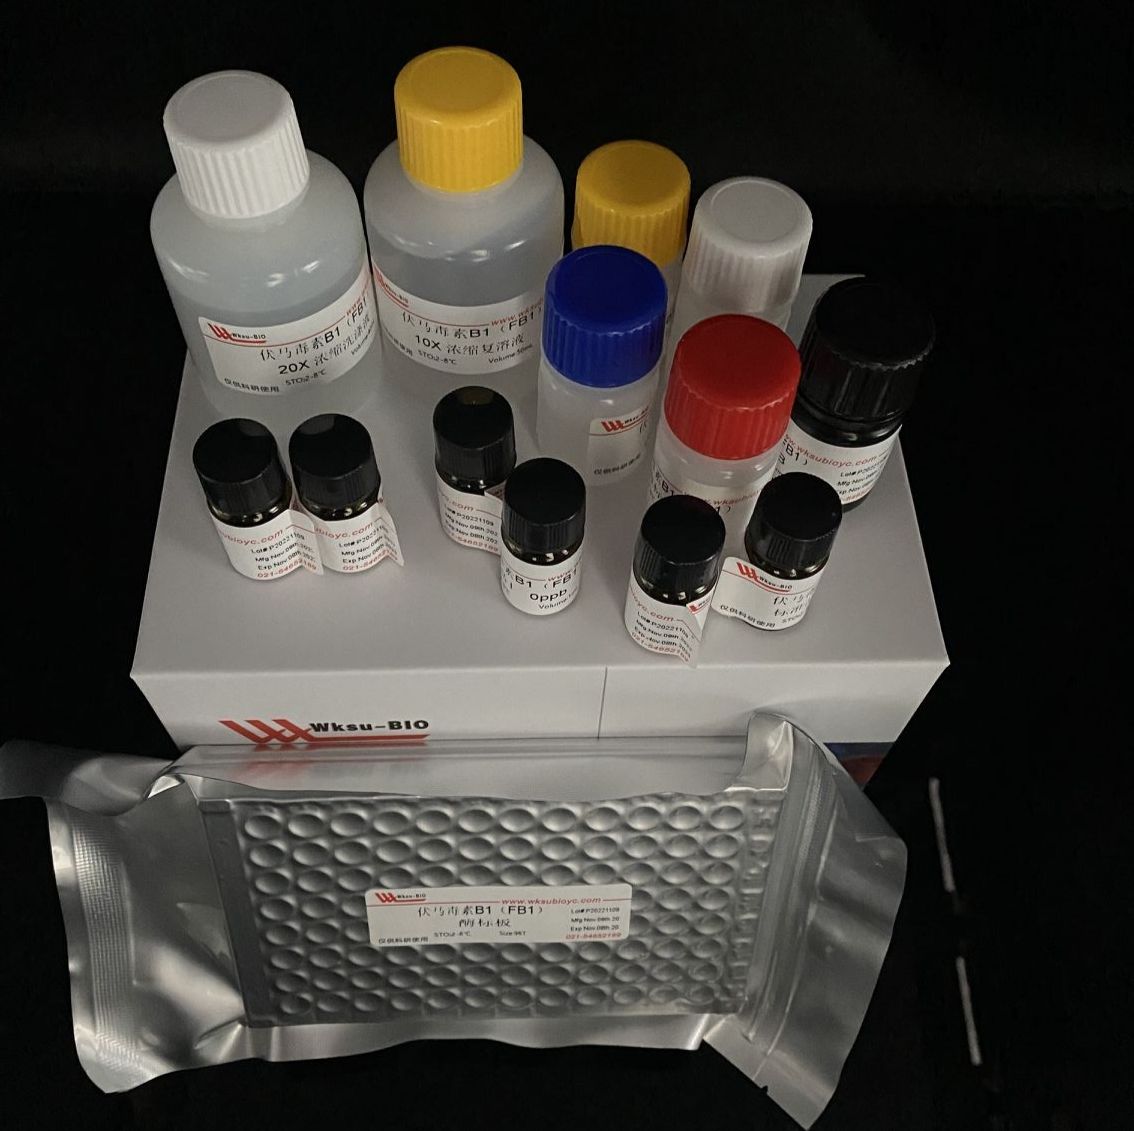 ADPG焦磷酸化酶/腺苷二磷酸葡萄糖焦磷酸化酶试剂盒,微板法